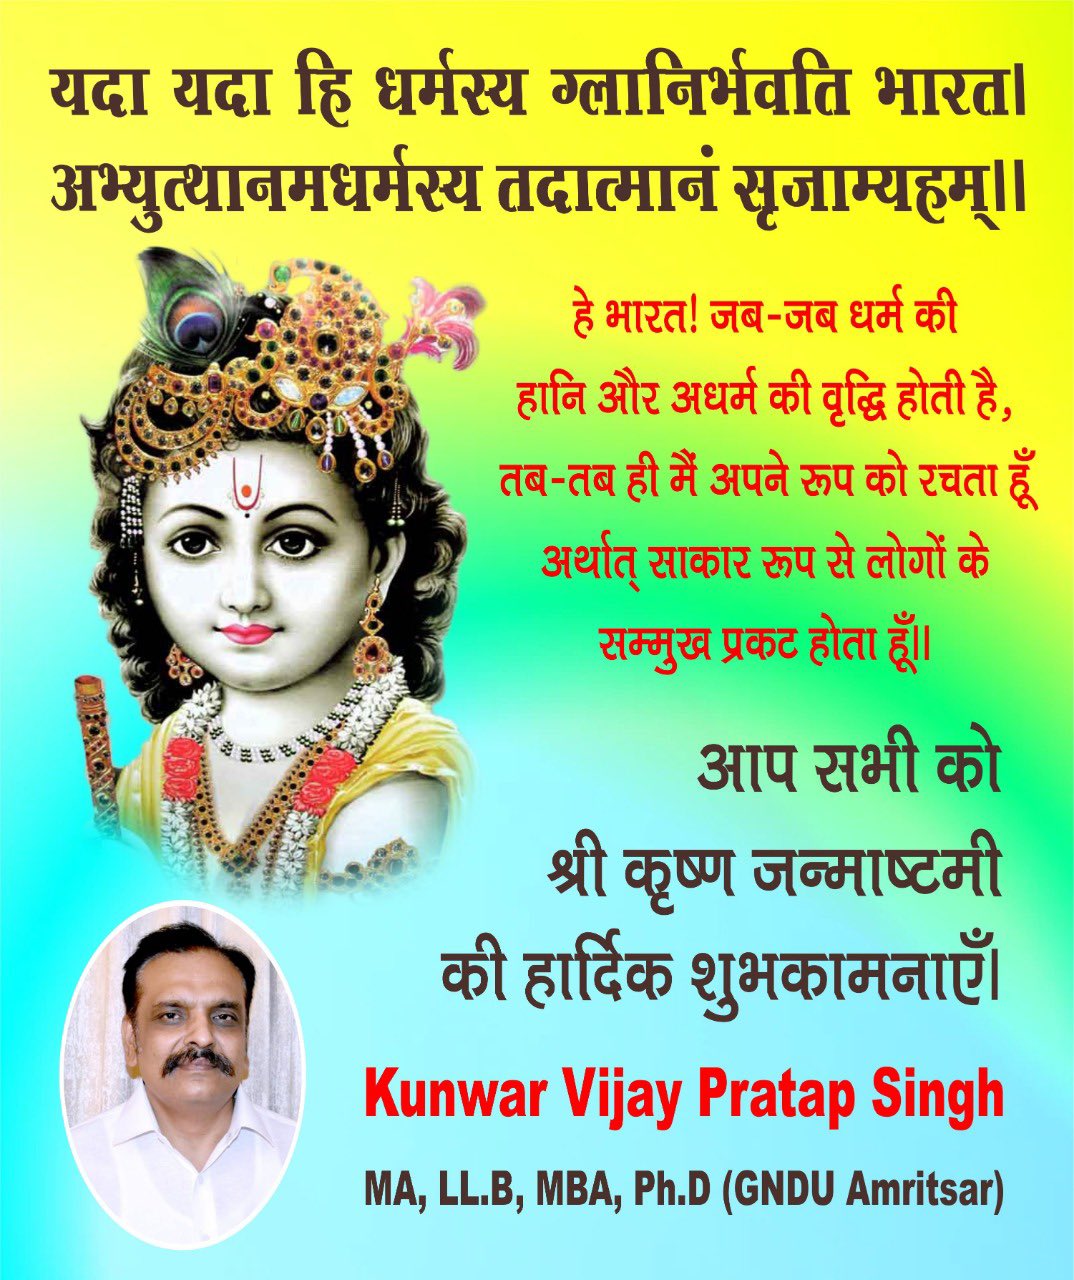 Kunwar Vijay Pratap Singh on Twitter: 